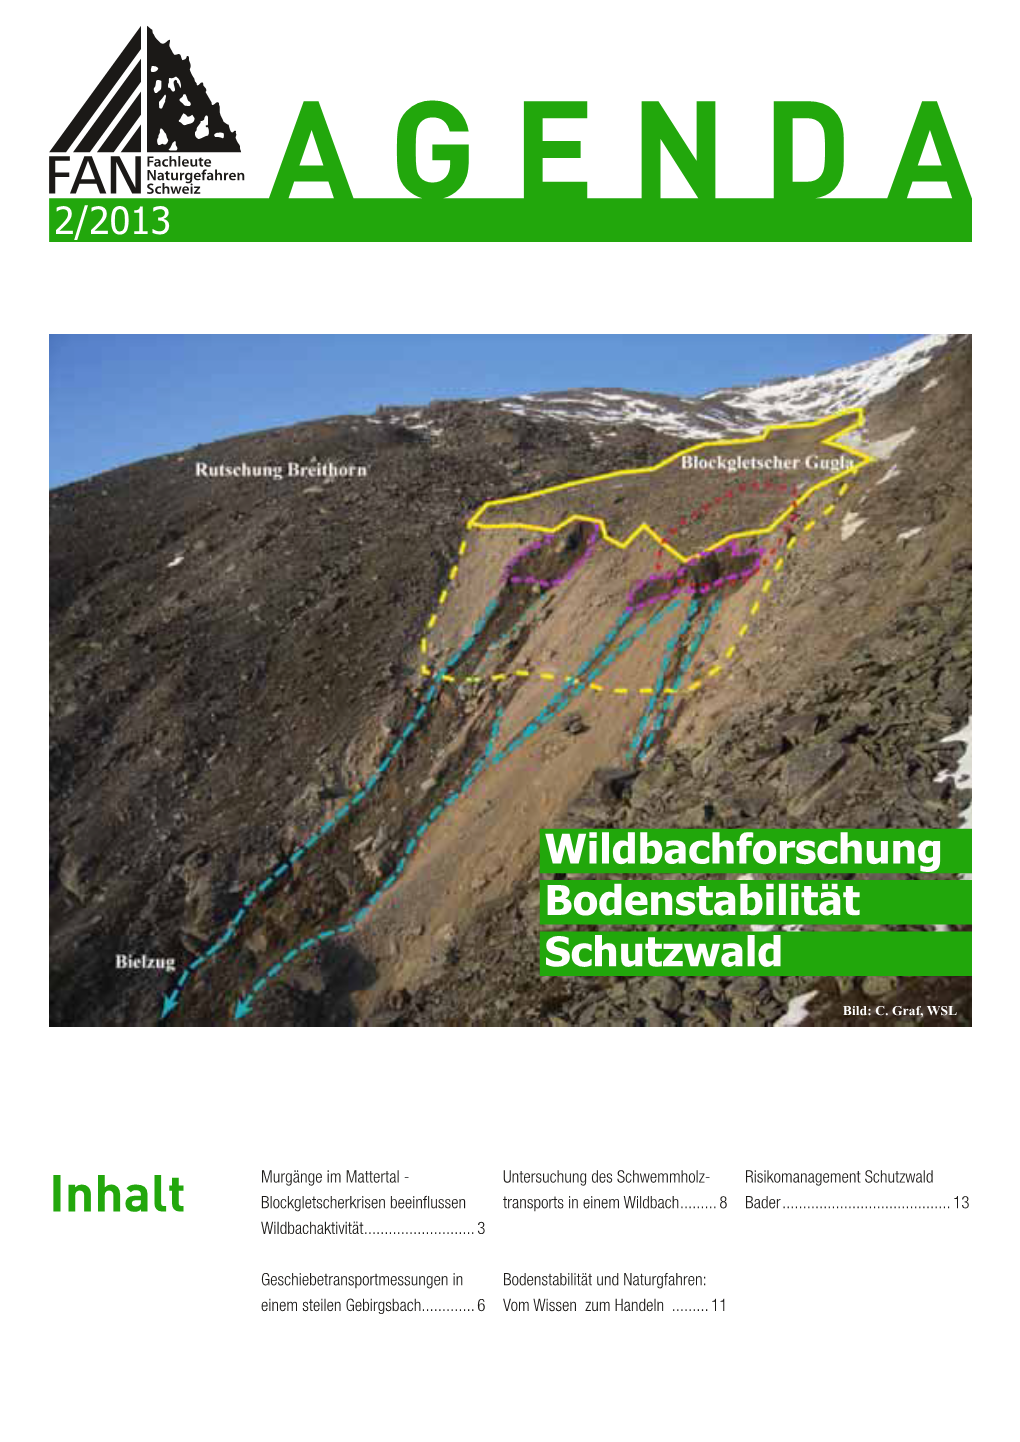 Wildbachforschung/Bodenstabilität/Schutzwald